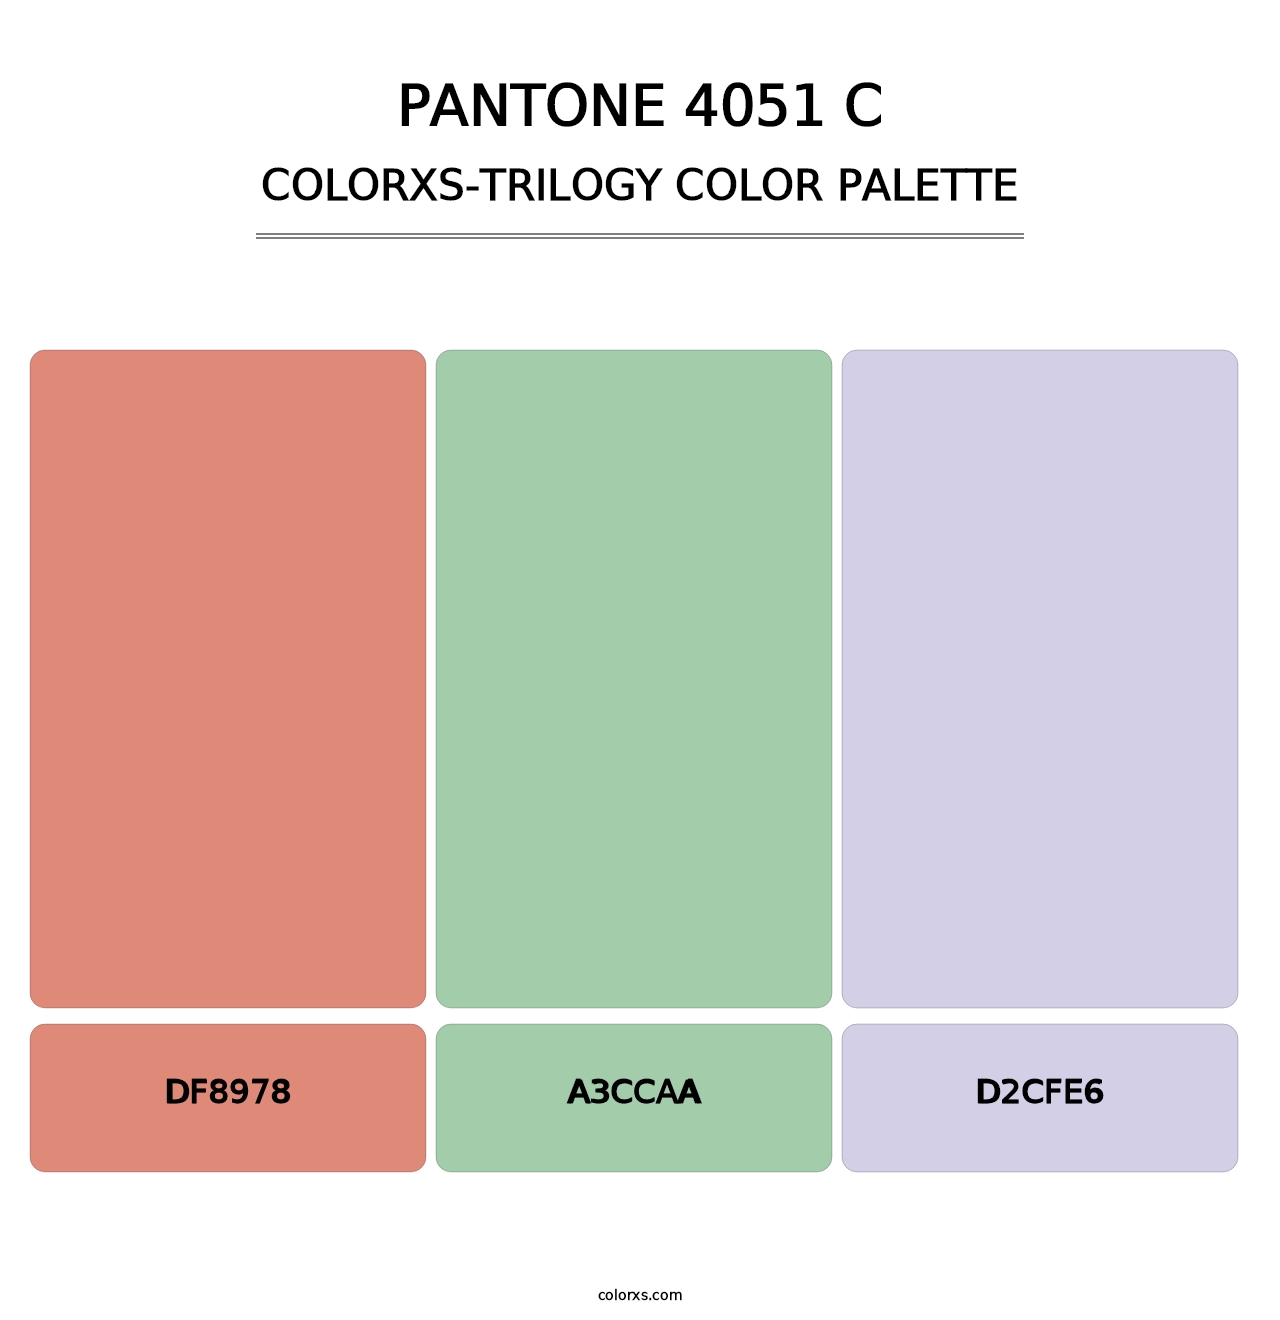 PANTONE 4051 C - Colorxs Trilogy Palette